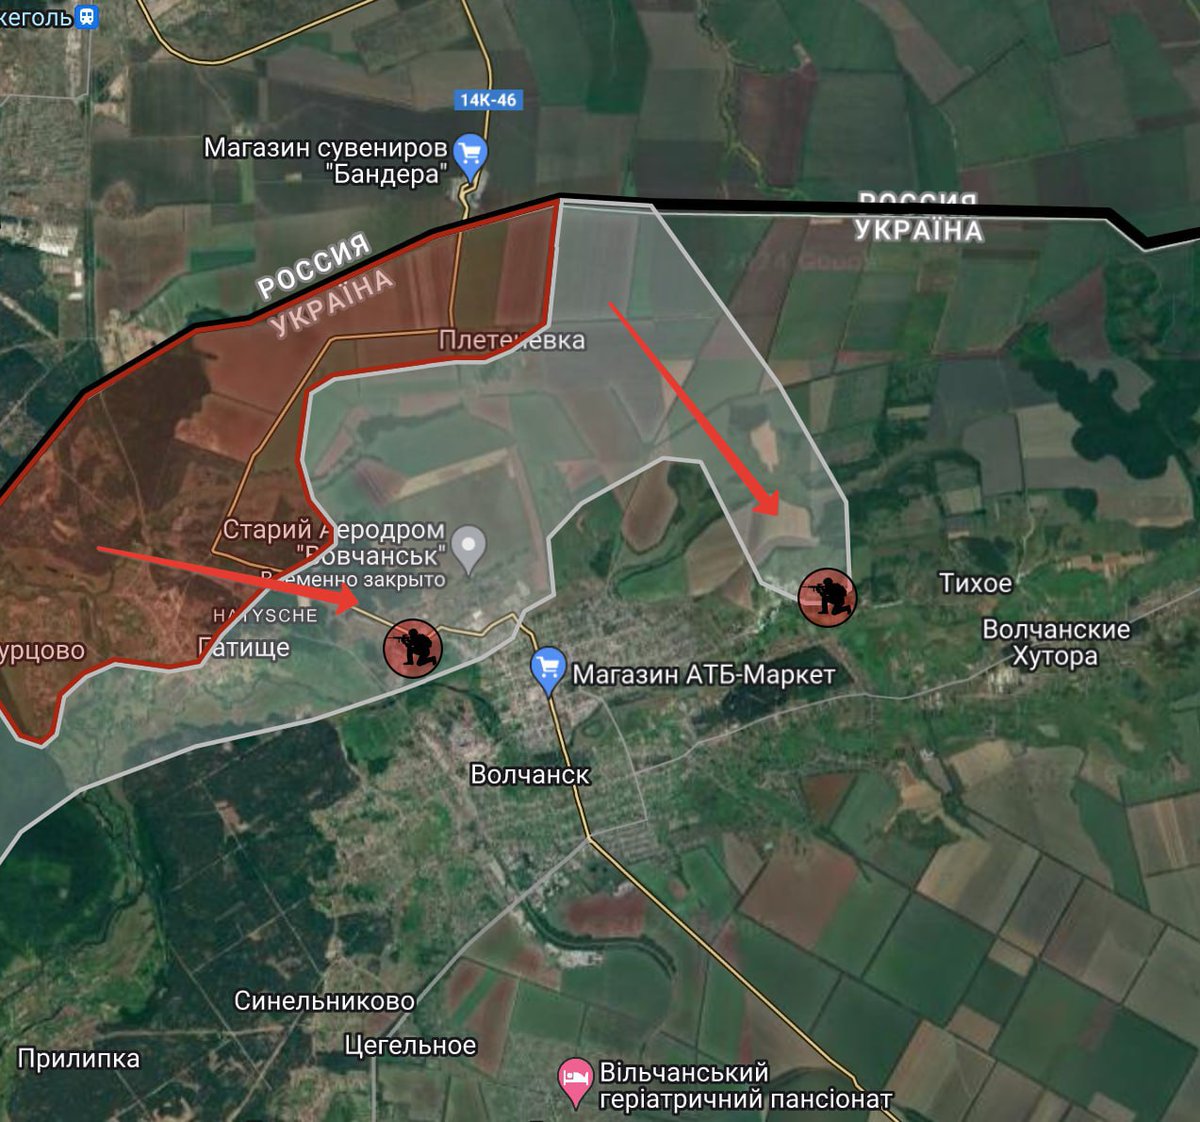 🇷🇺 🇺🇦 RÉGION DE KHARKOV - VOLCHANSK.
Les chaînes ukrainiennes rapportent que des groupes d'assaut russes sont entrés dans la ville par deux côtés.

Deux majors